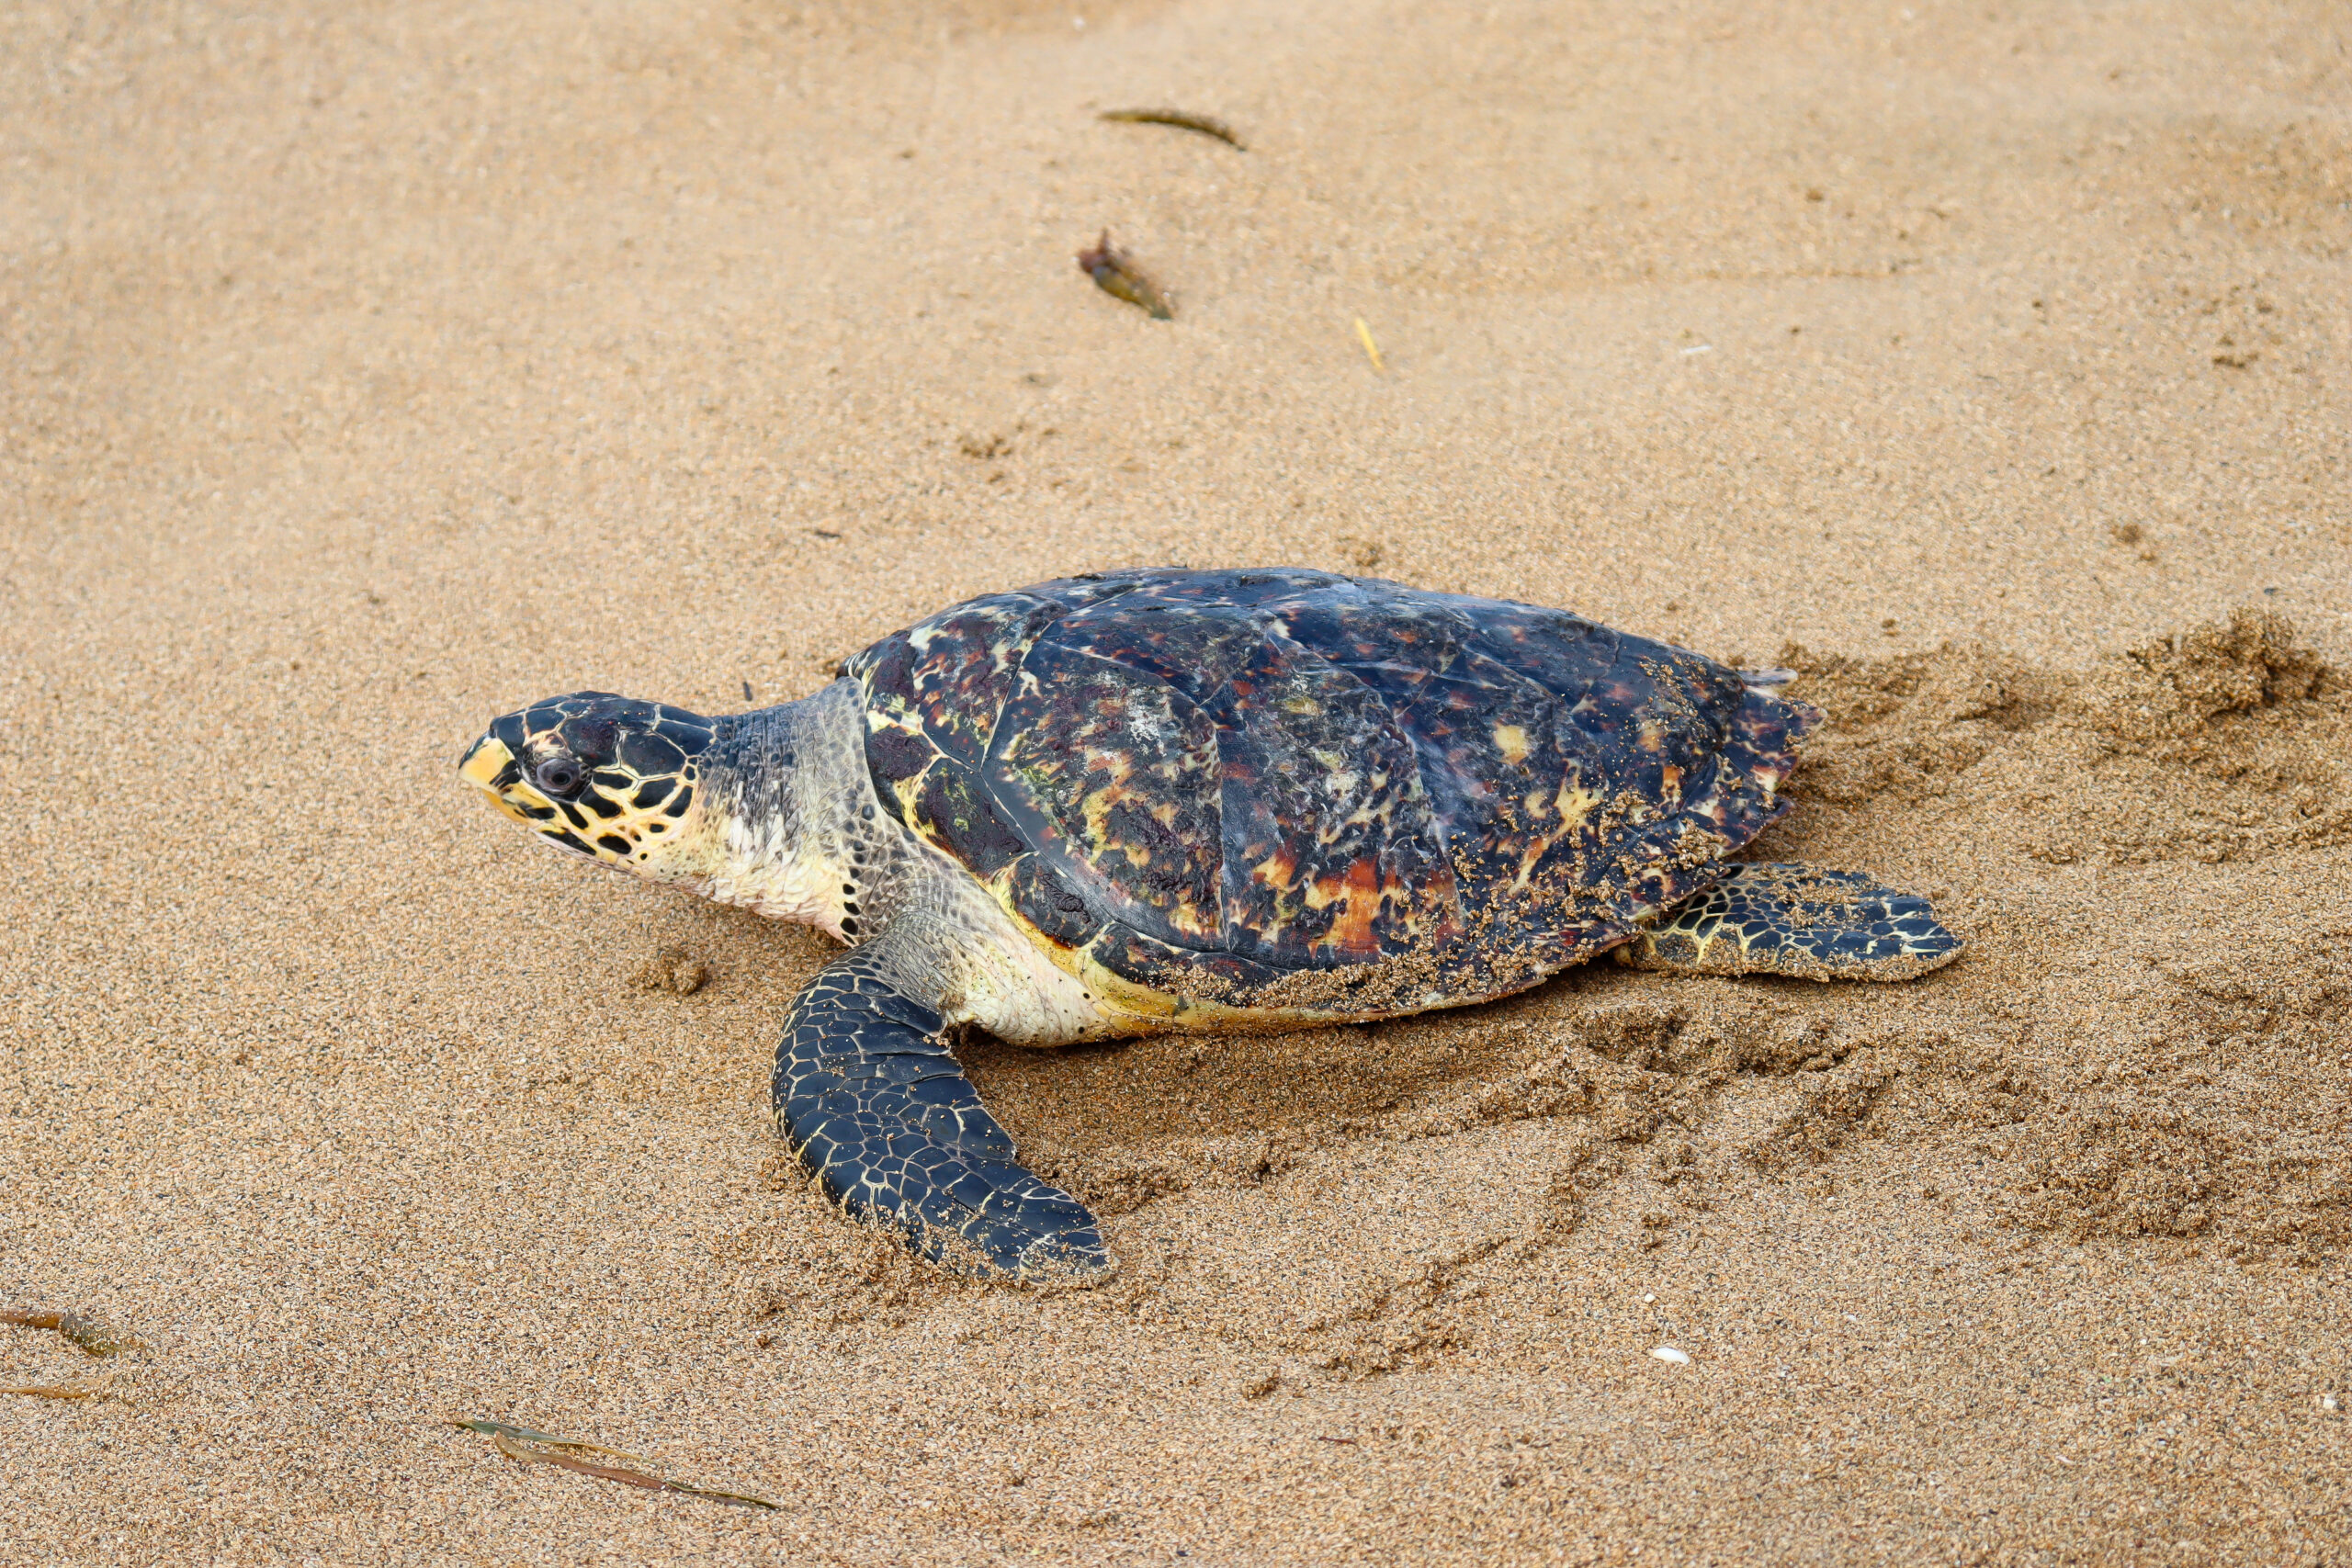 Medio Ambiente pide a bañistas cuidar las tortugas marinas